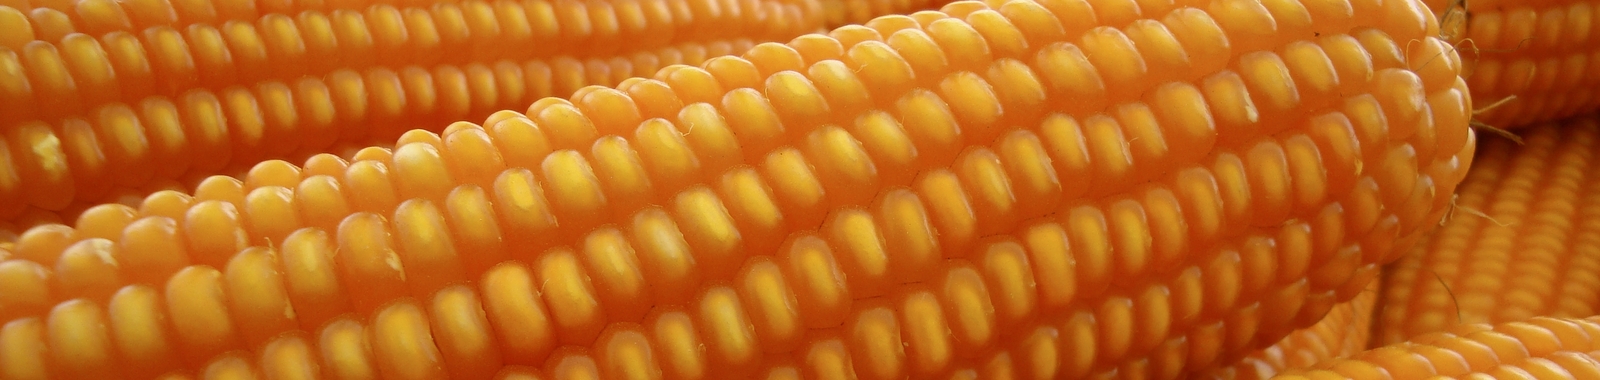 Como mejorar la calidad del maíz